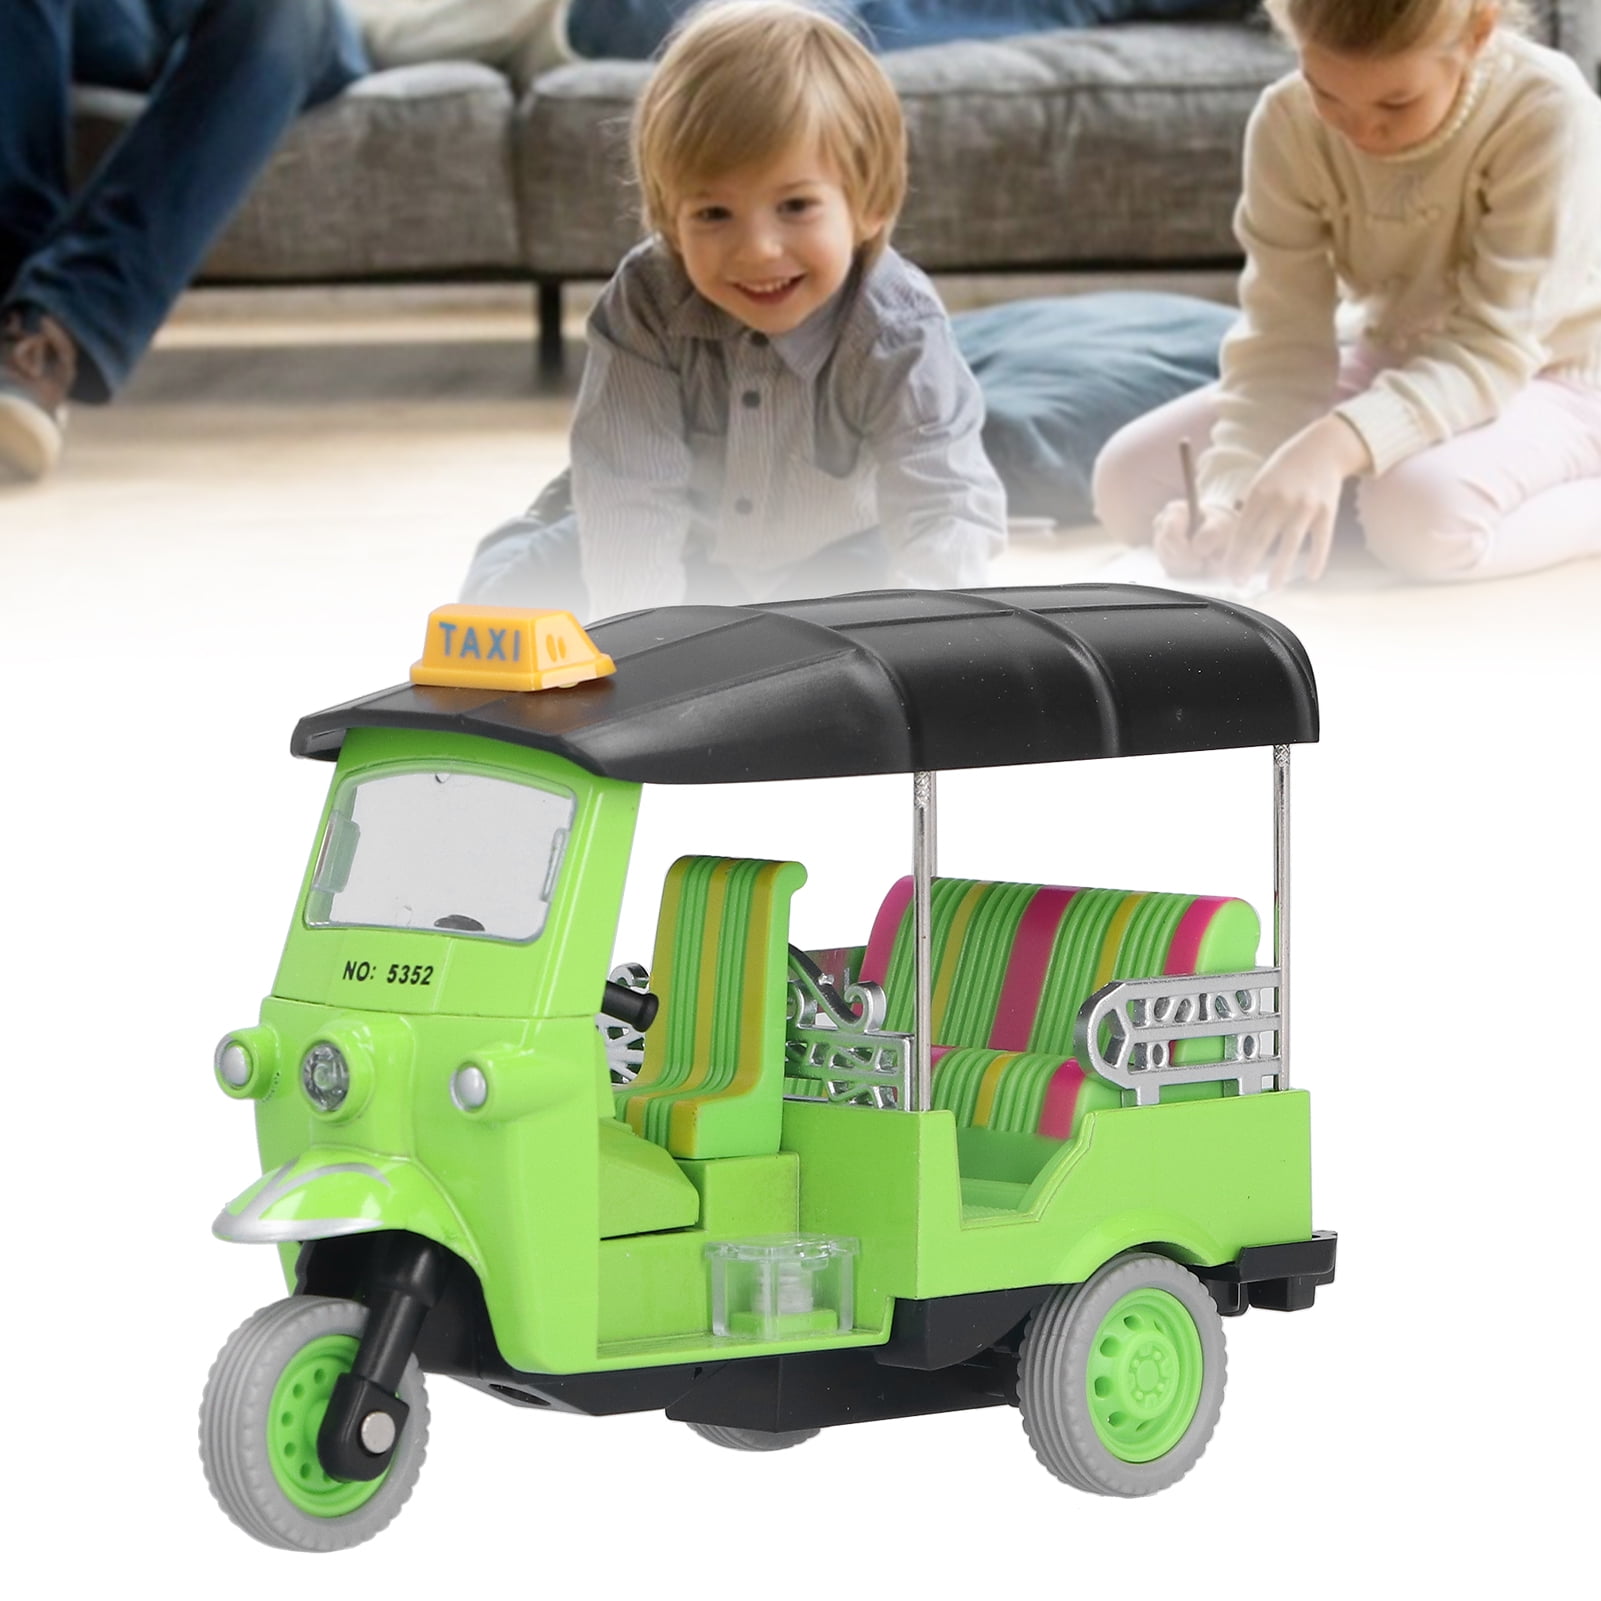 VisionX BABY AUTO Rickshaw - BABY AUTO Rickshaw . Buy toys toys in